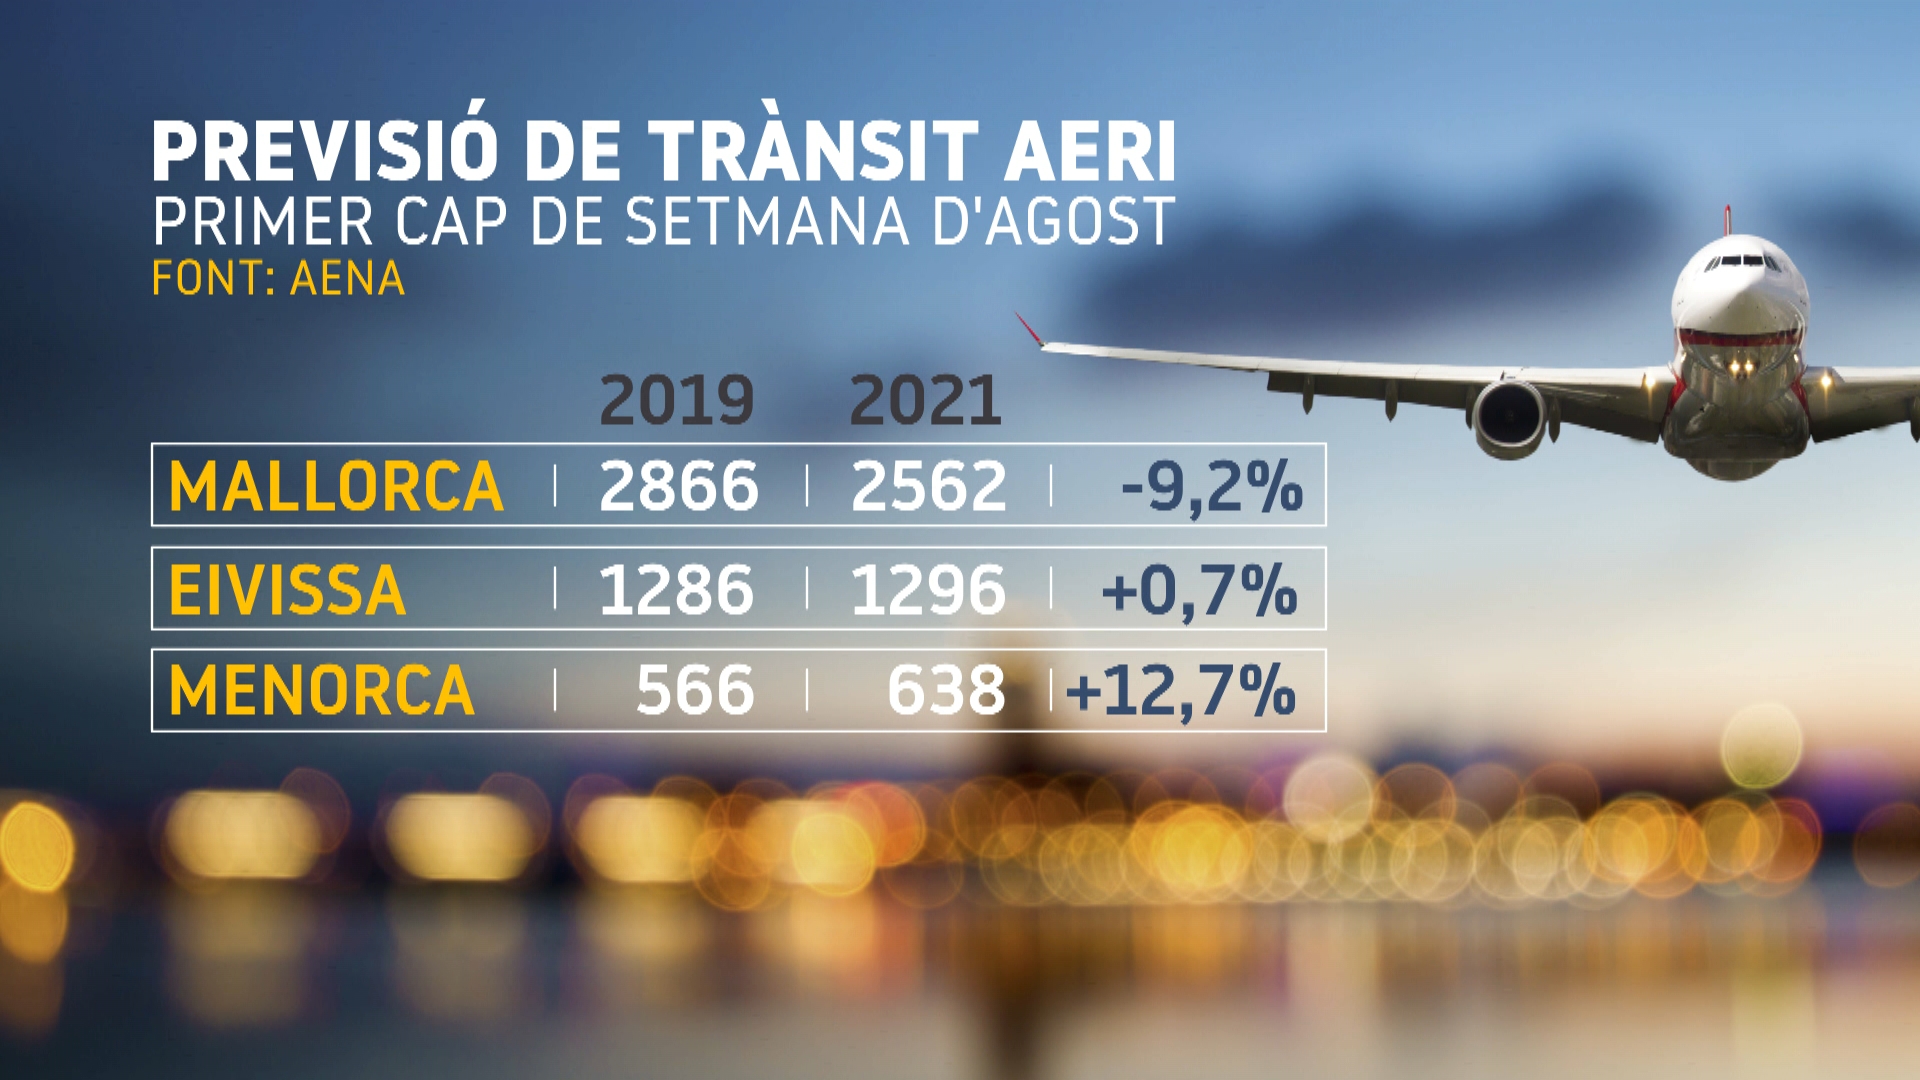 Menorca rebrà aquest primer cap de setmana d’agost un 13%25 més de vols que abans de la pandèmia